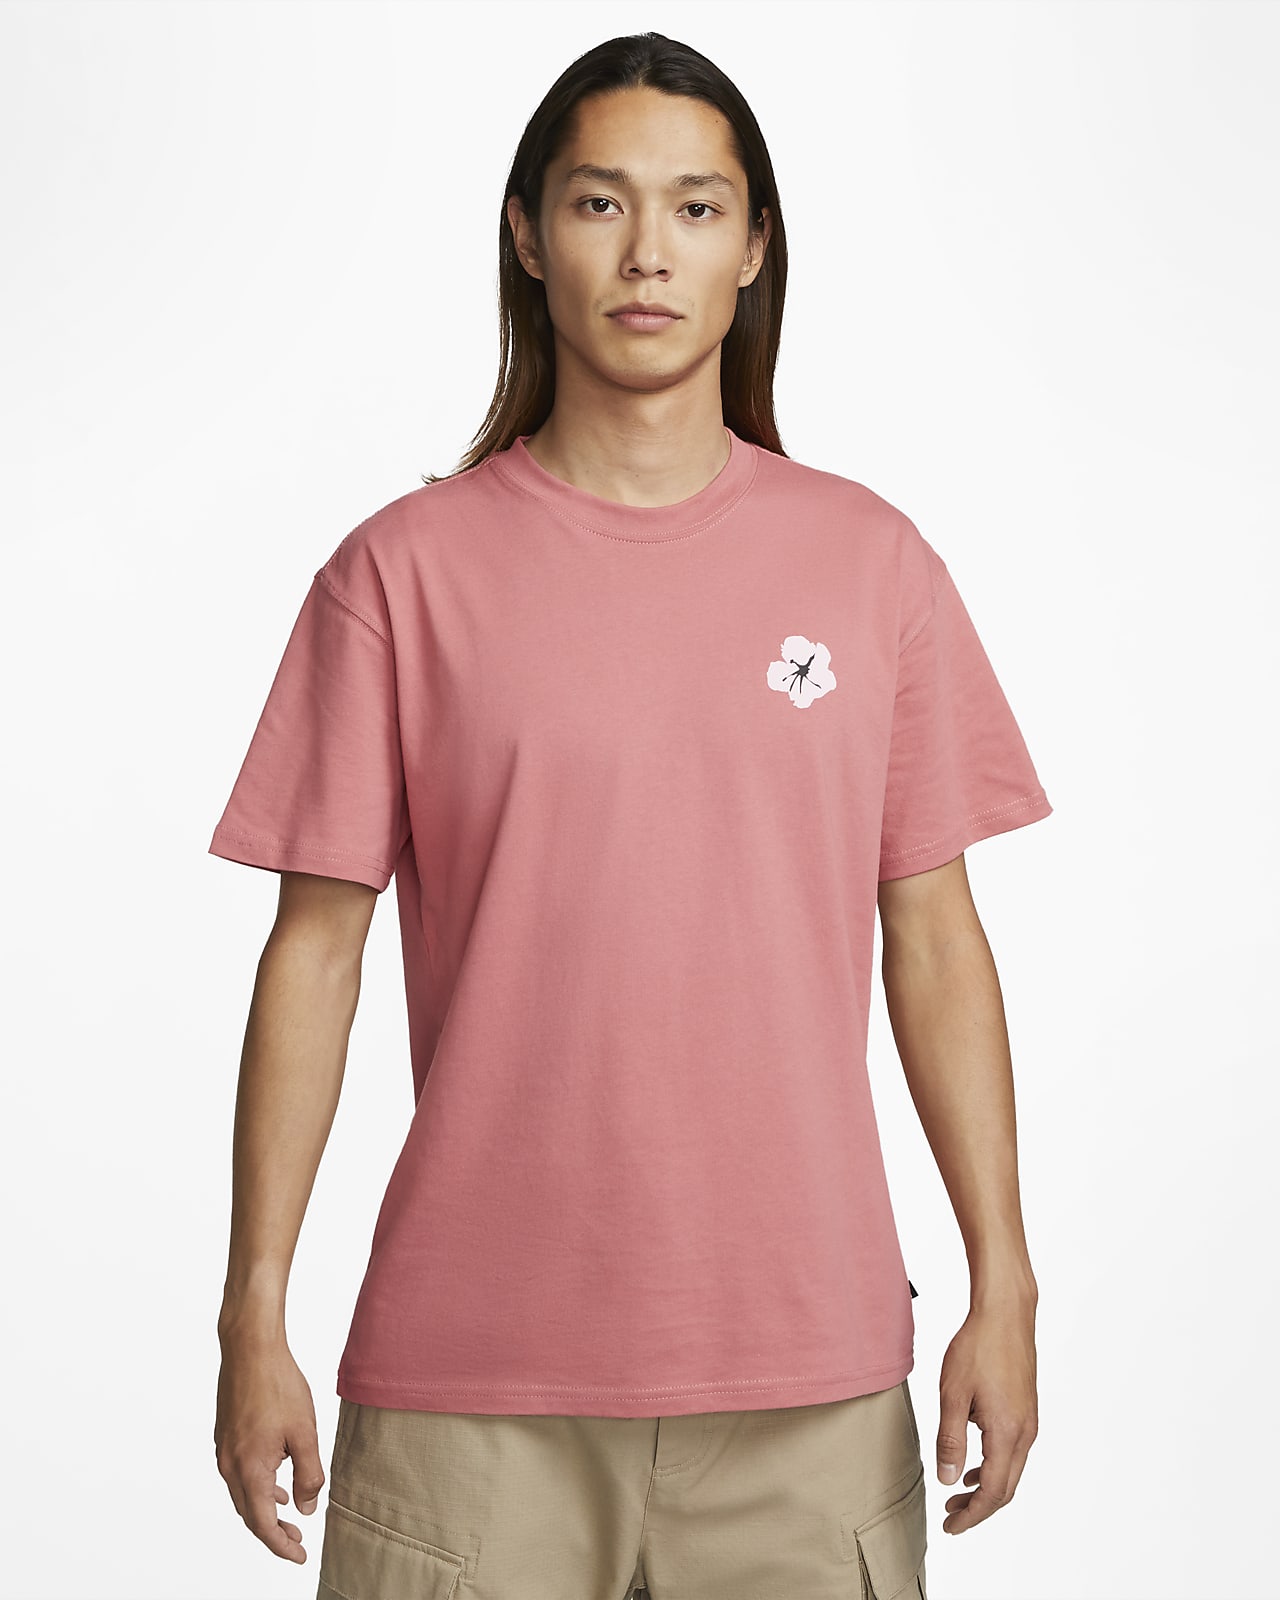 Nike SB 男款滑板 T 恤